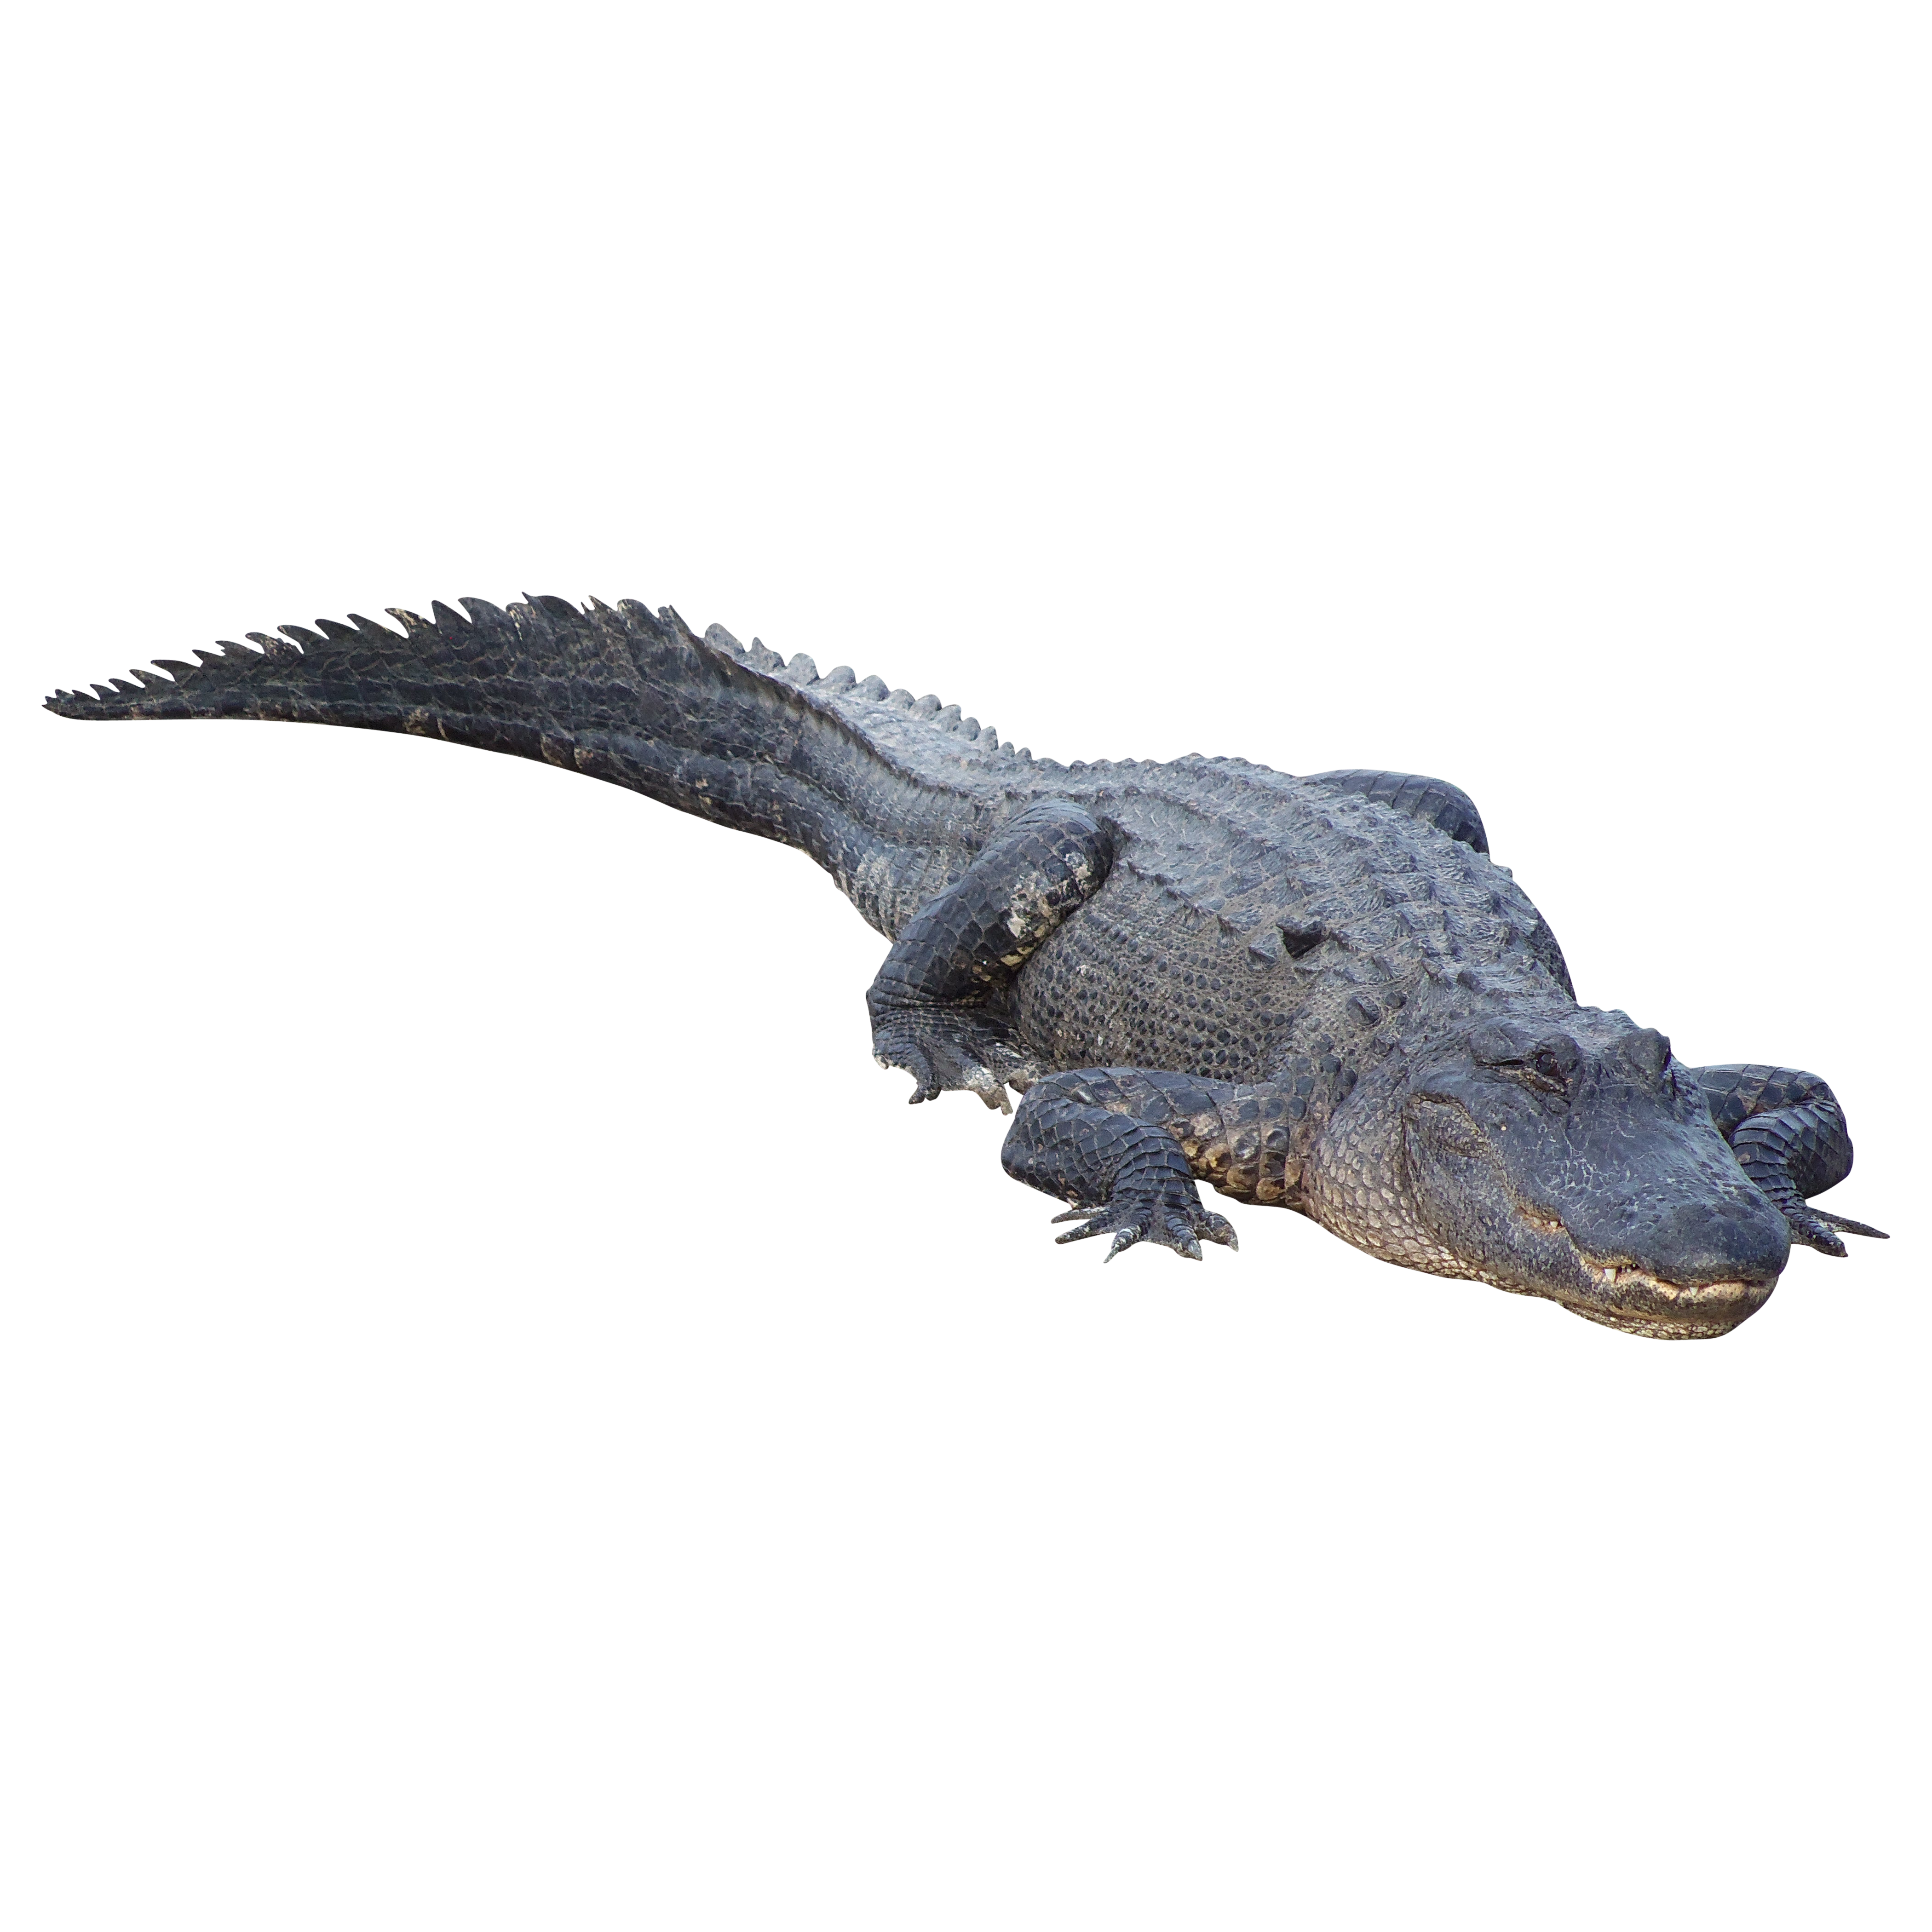 gator clipart crocodile tail